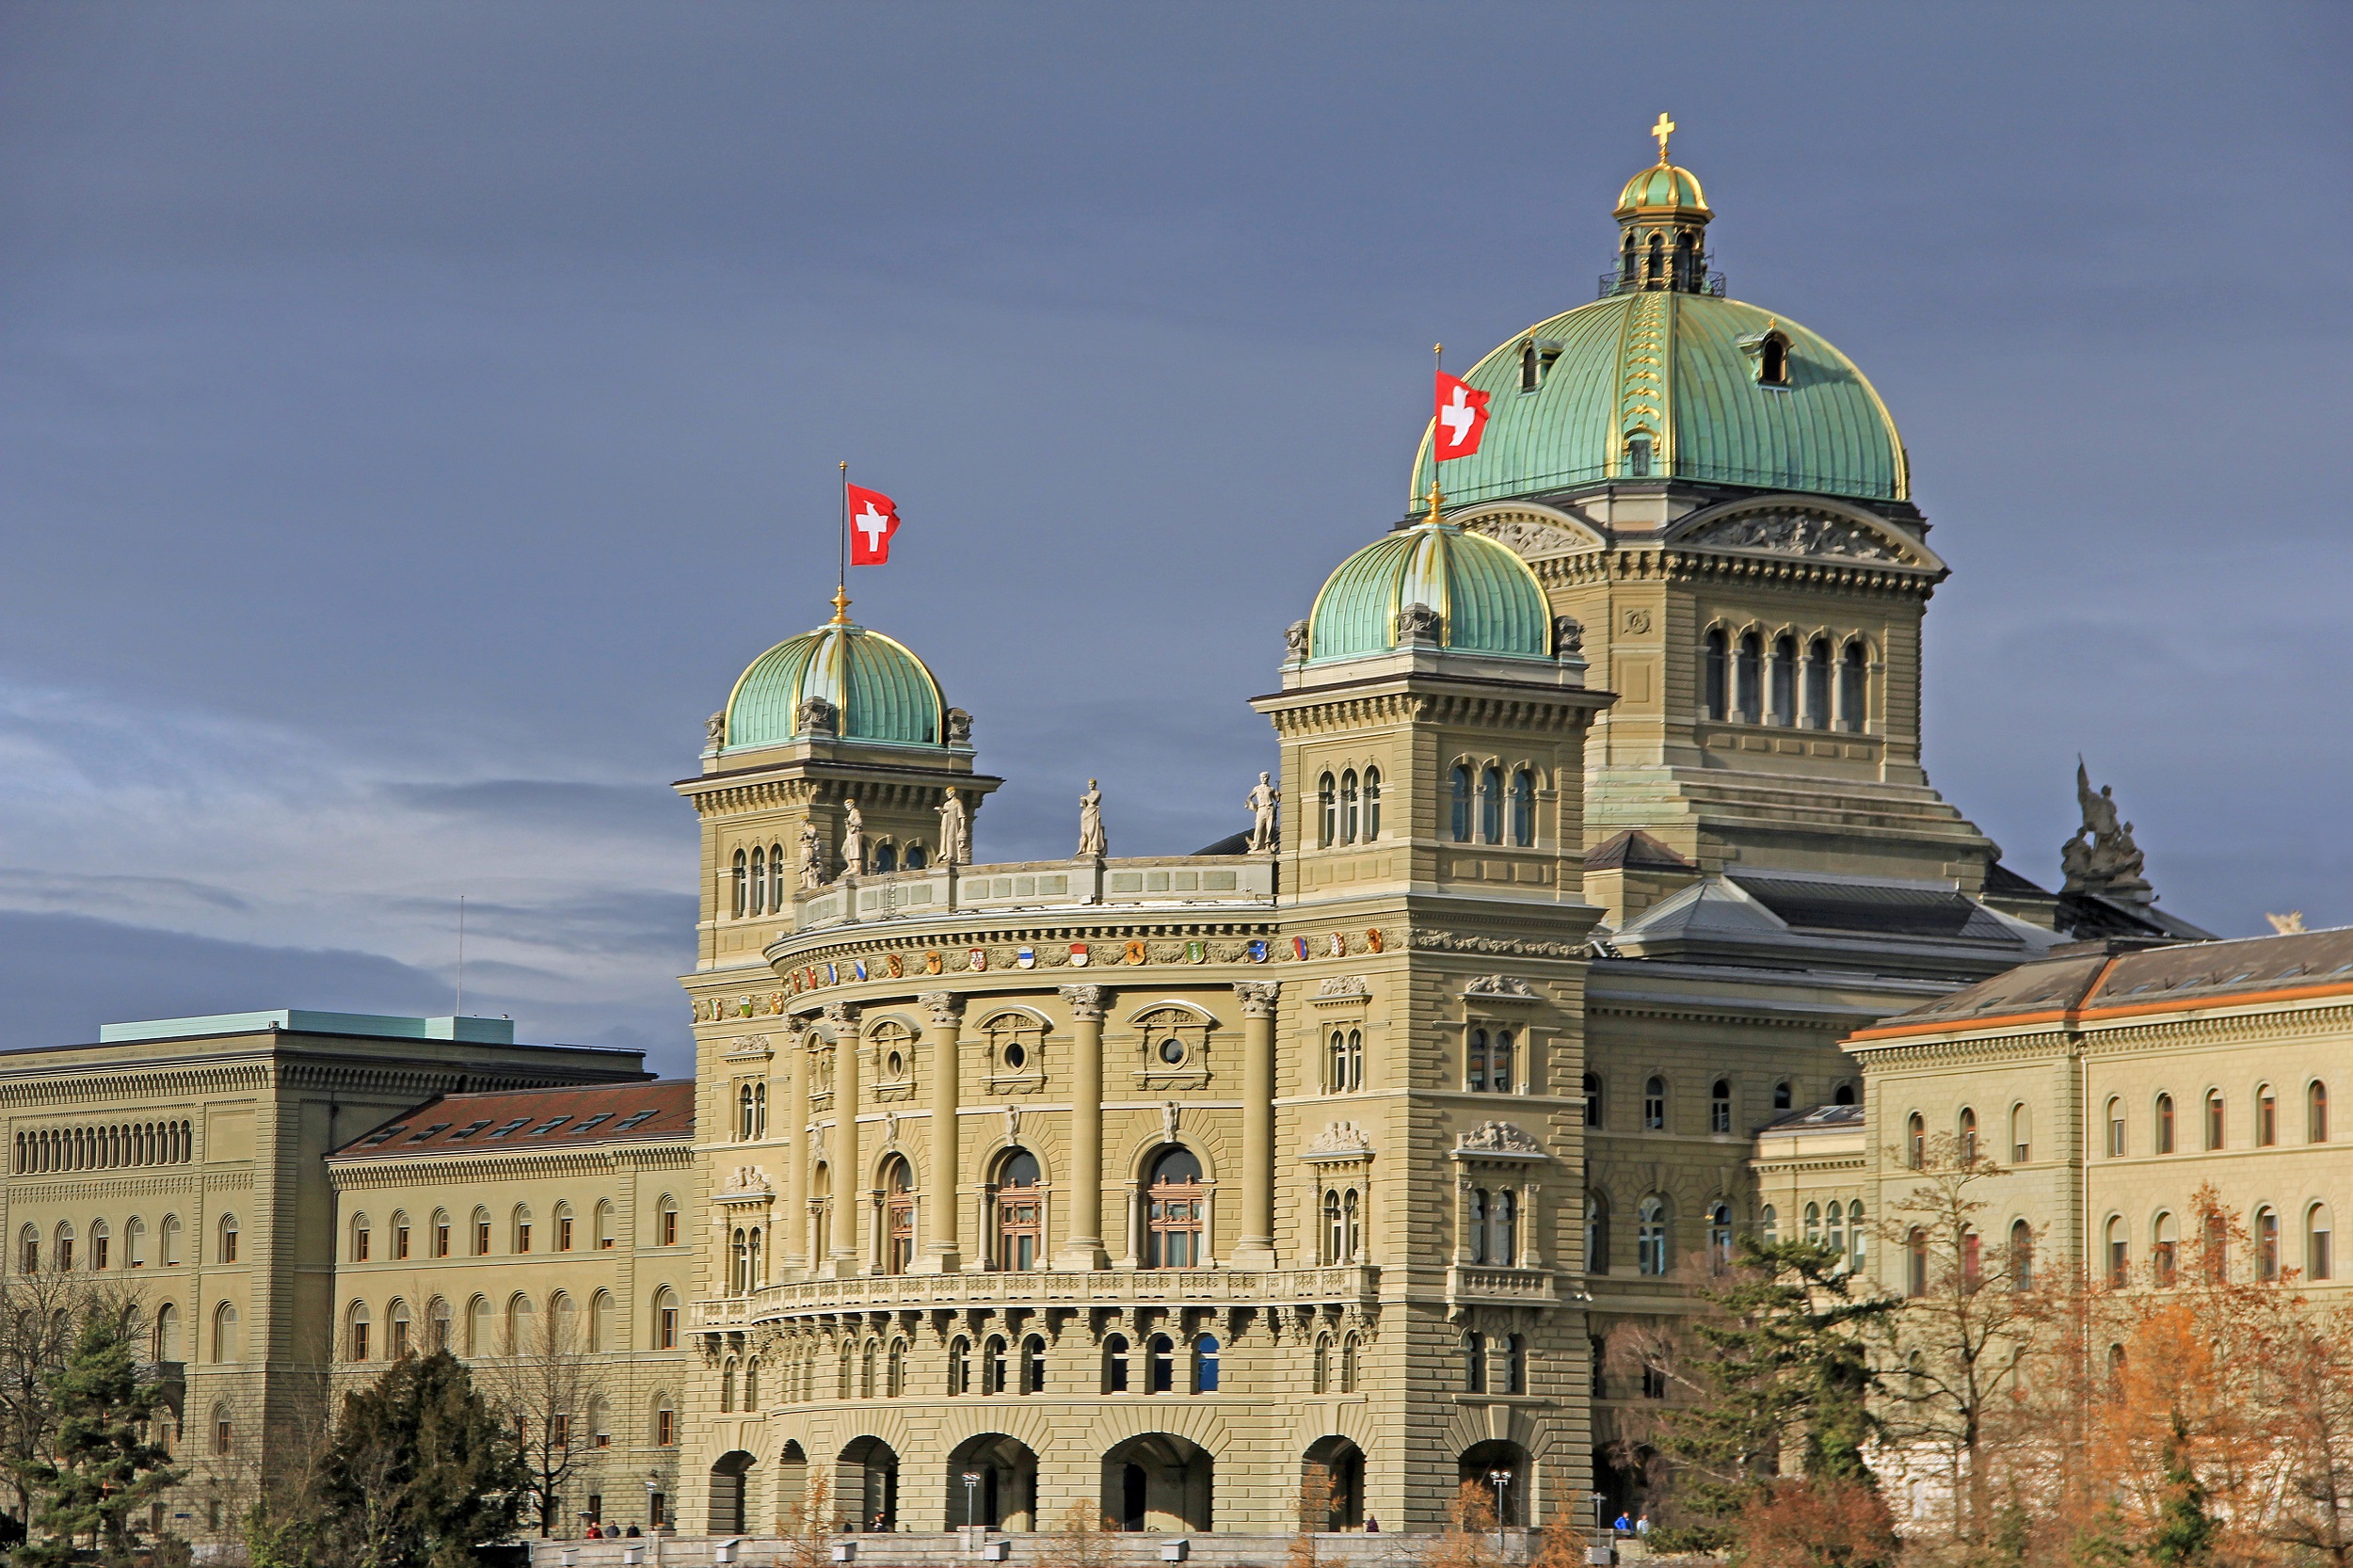 Palazzo federale, sede dell'Assemblea legislativa della Svizzera.